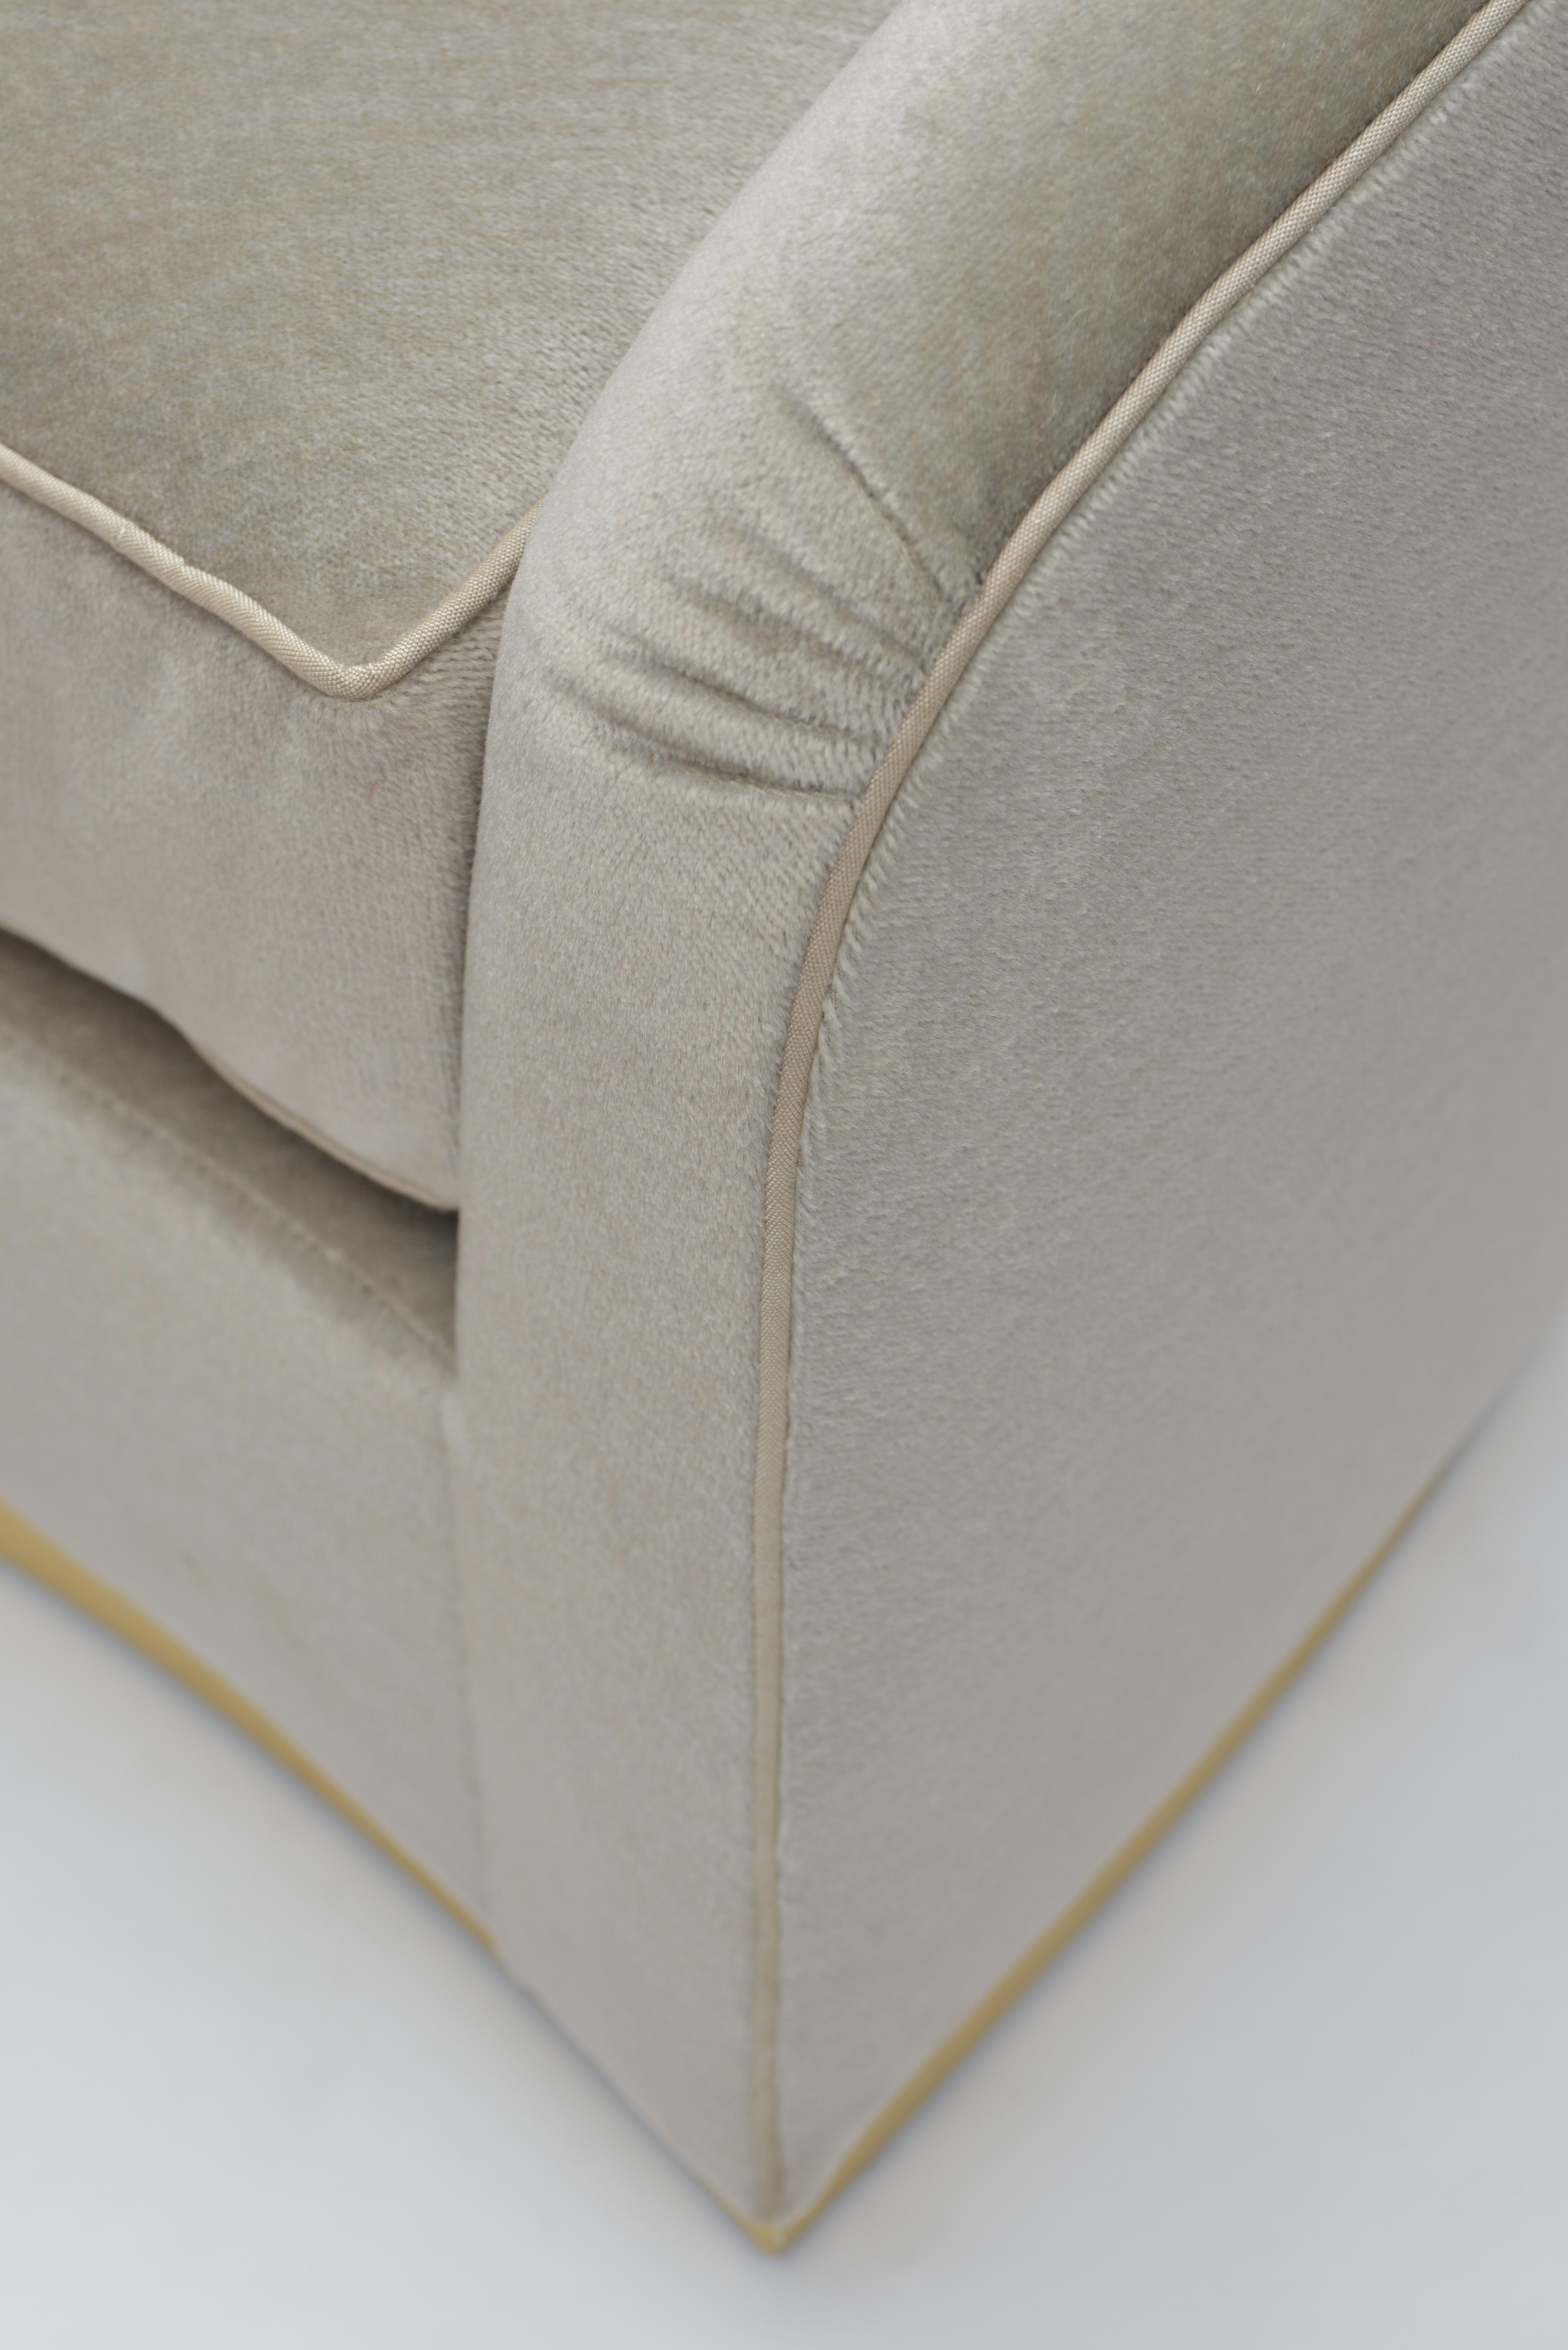 Modern Donghia Curve Sofa in Gray Ash Mohair Velvet For Sale